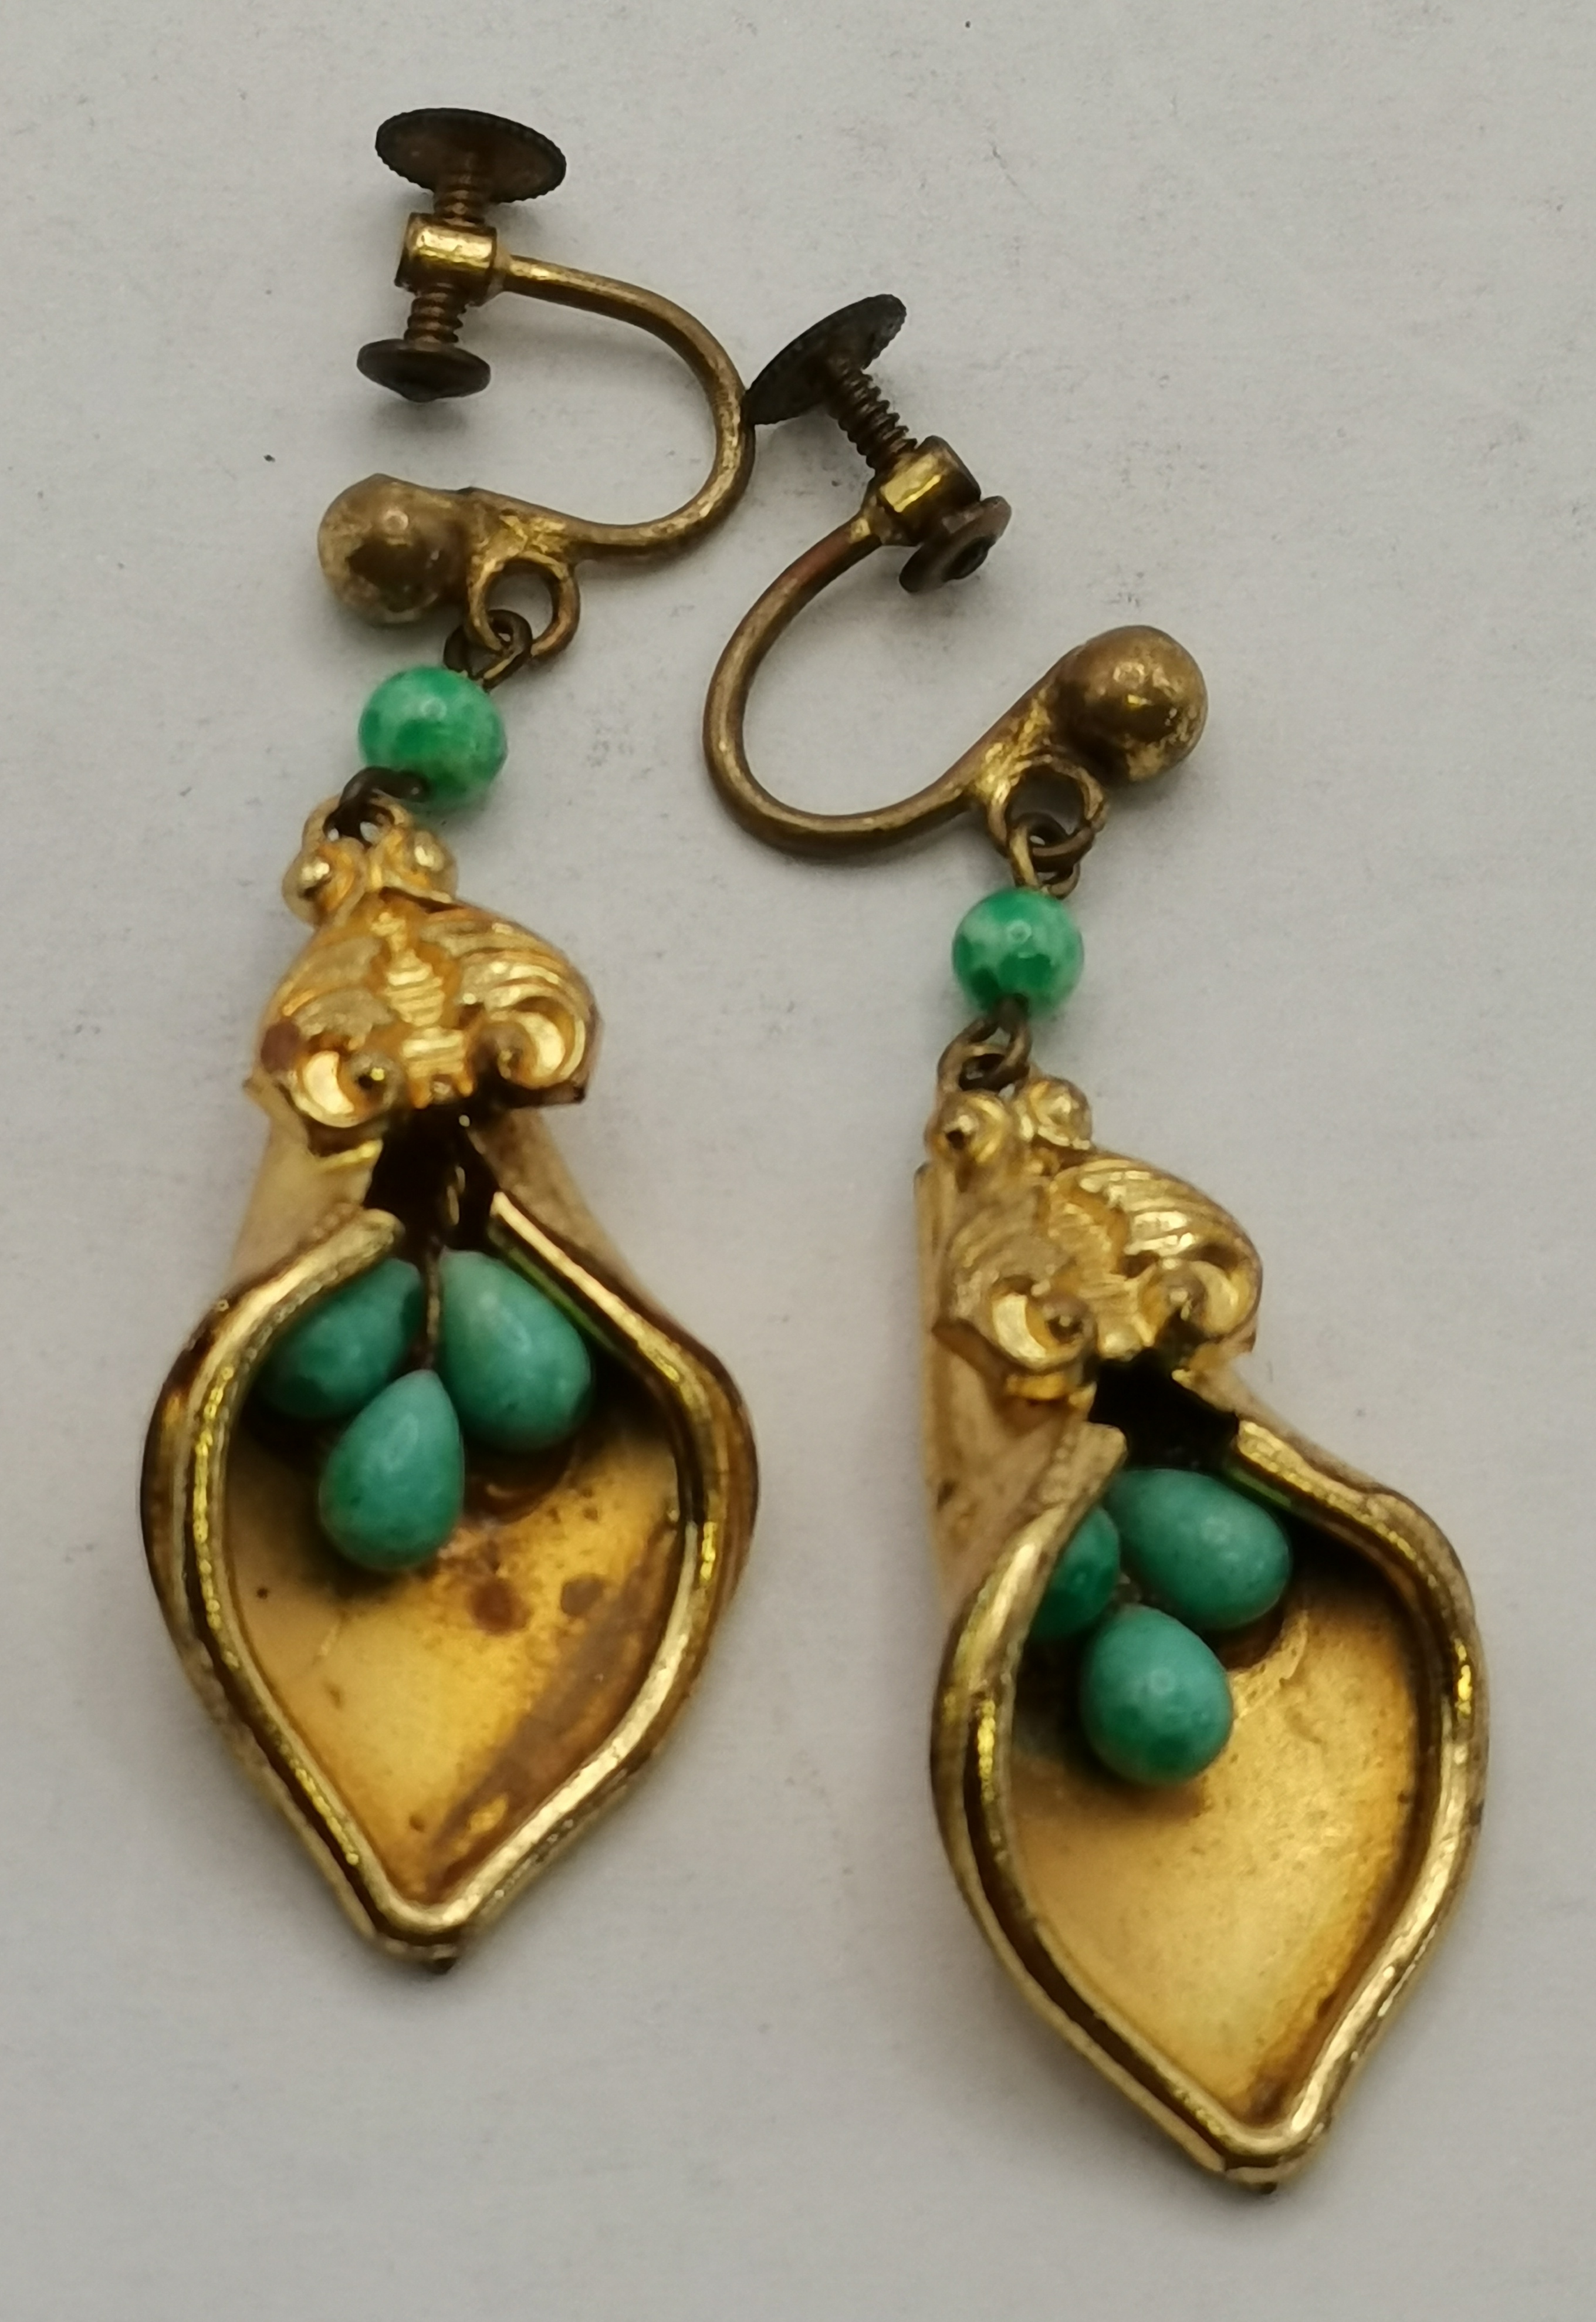 X2 pairs of screw back vintage Earrings - Image 3 of 3